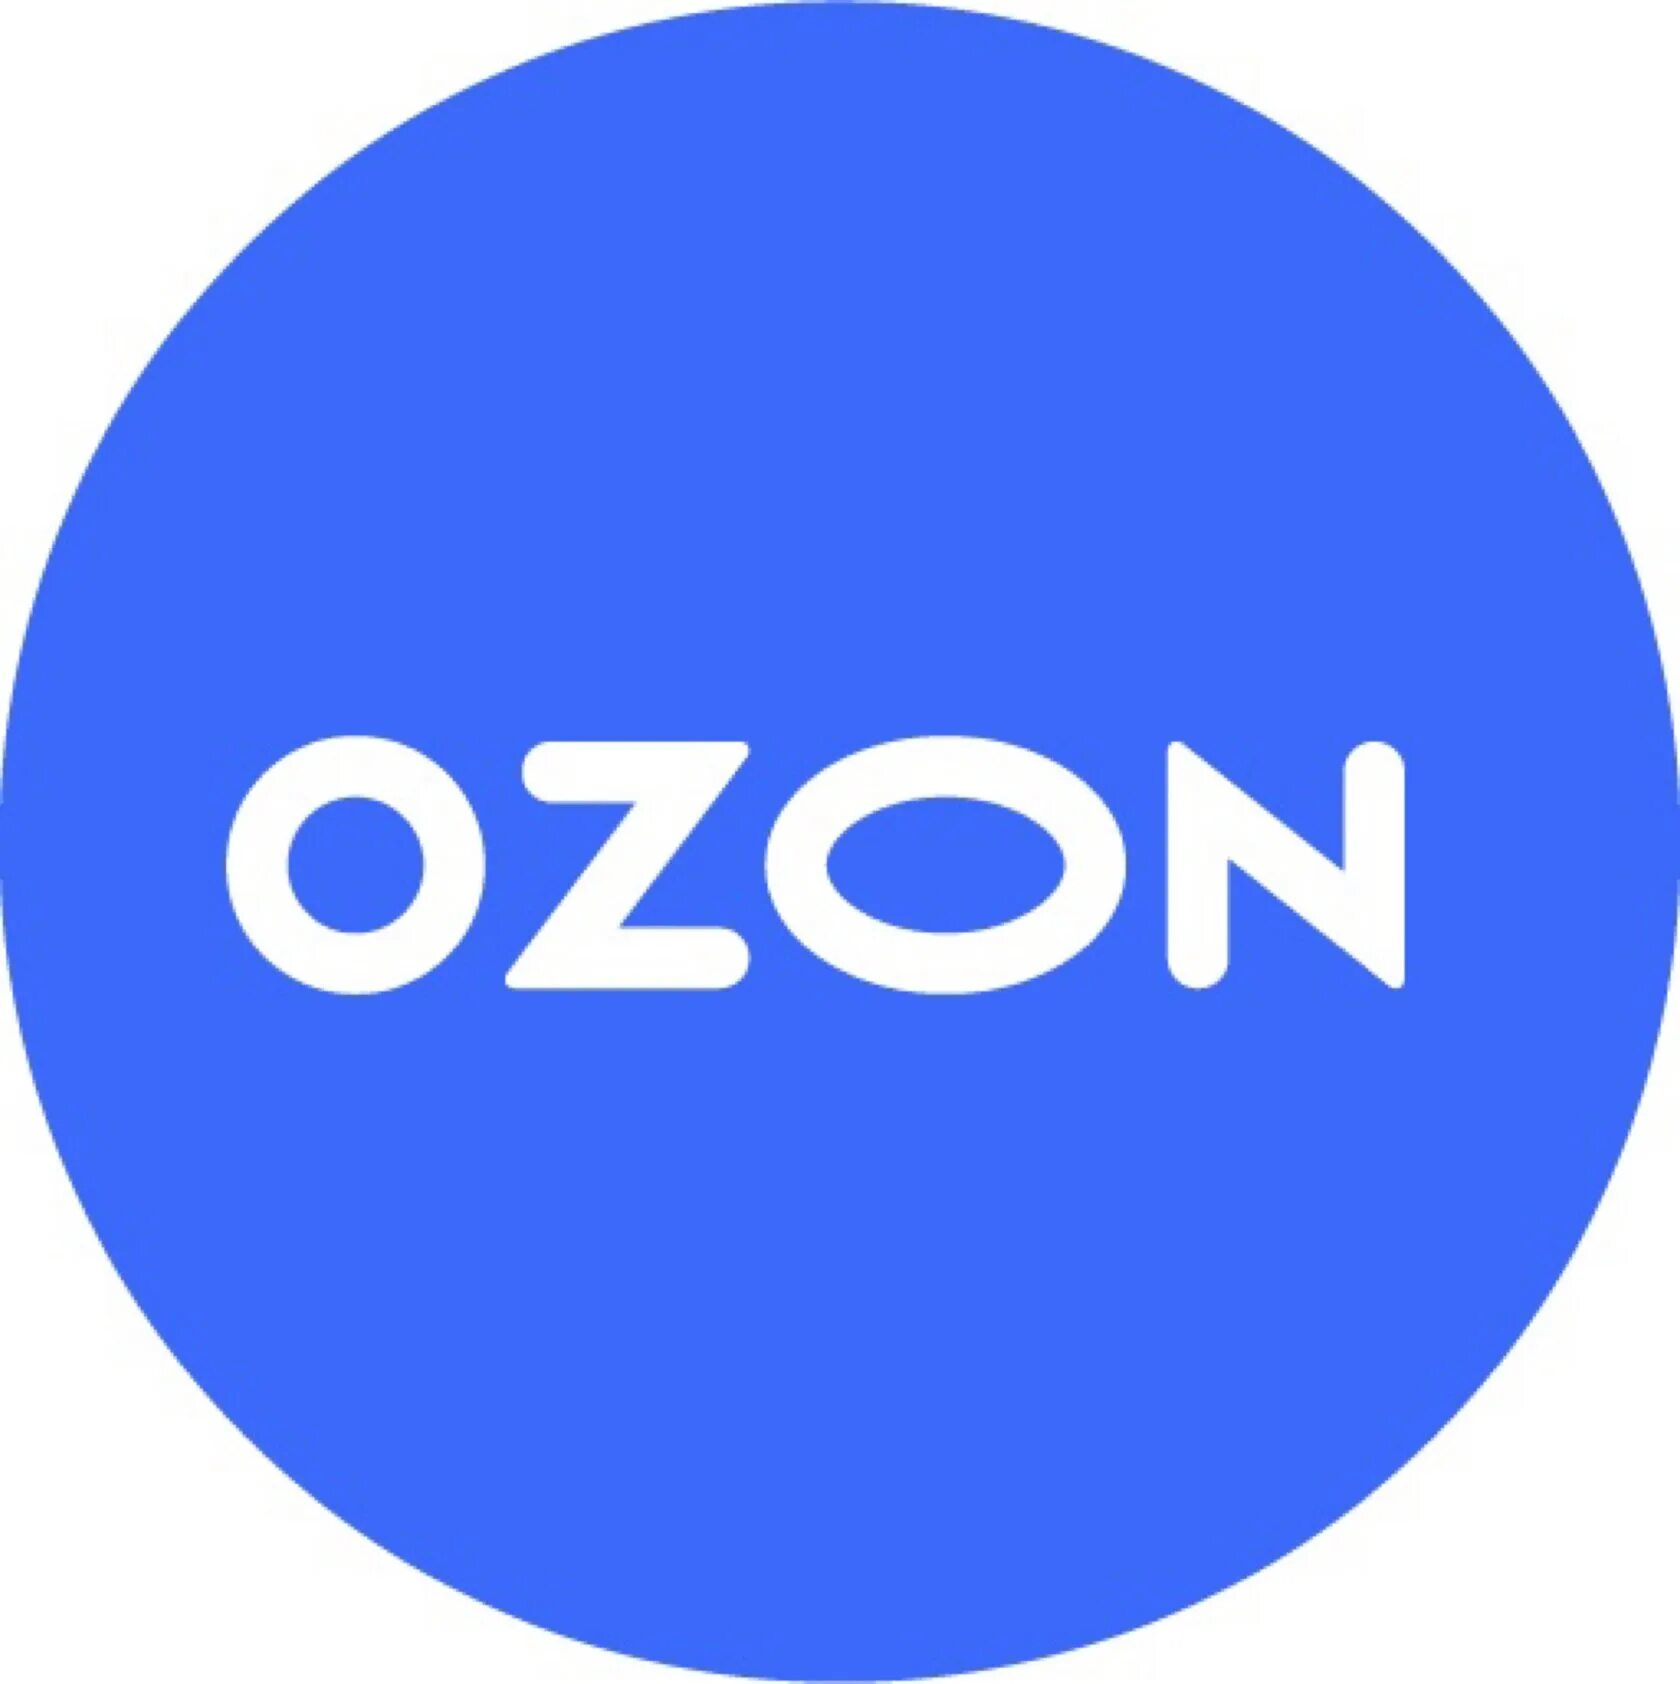 Т д озон. Озон. Озон логотип. Логотип Озон круглый. Осан.